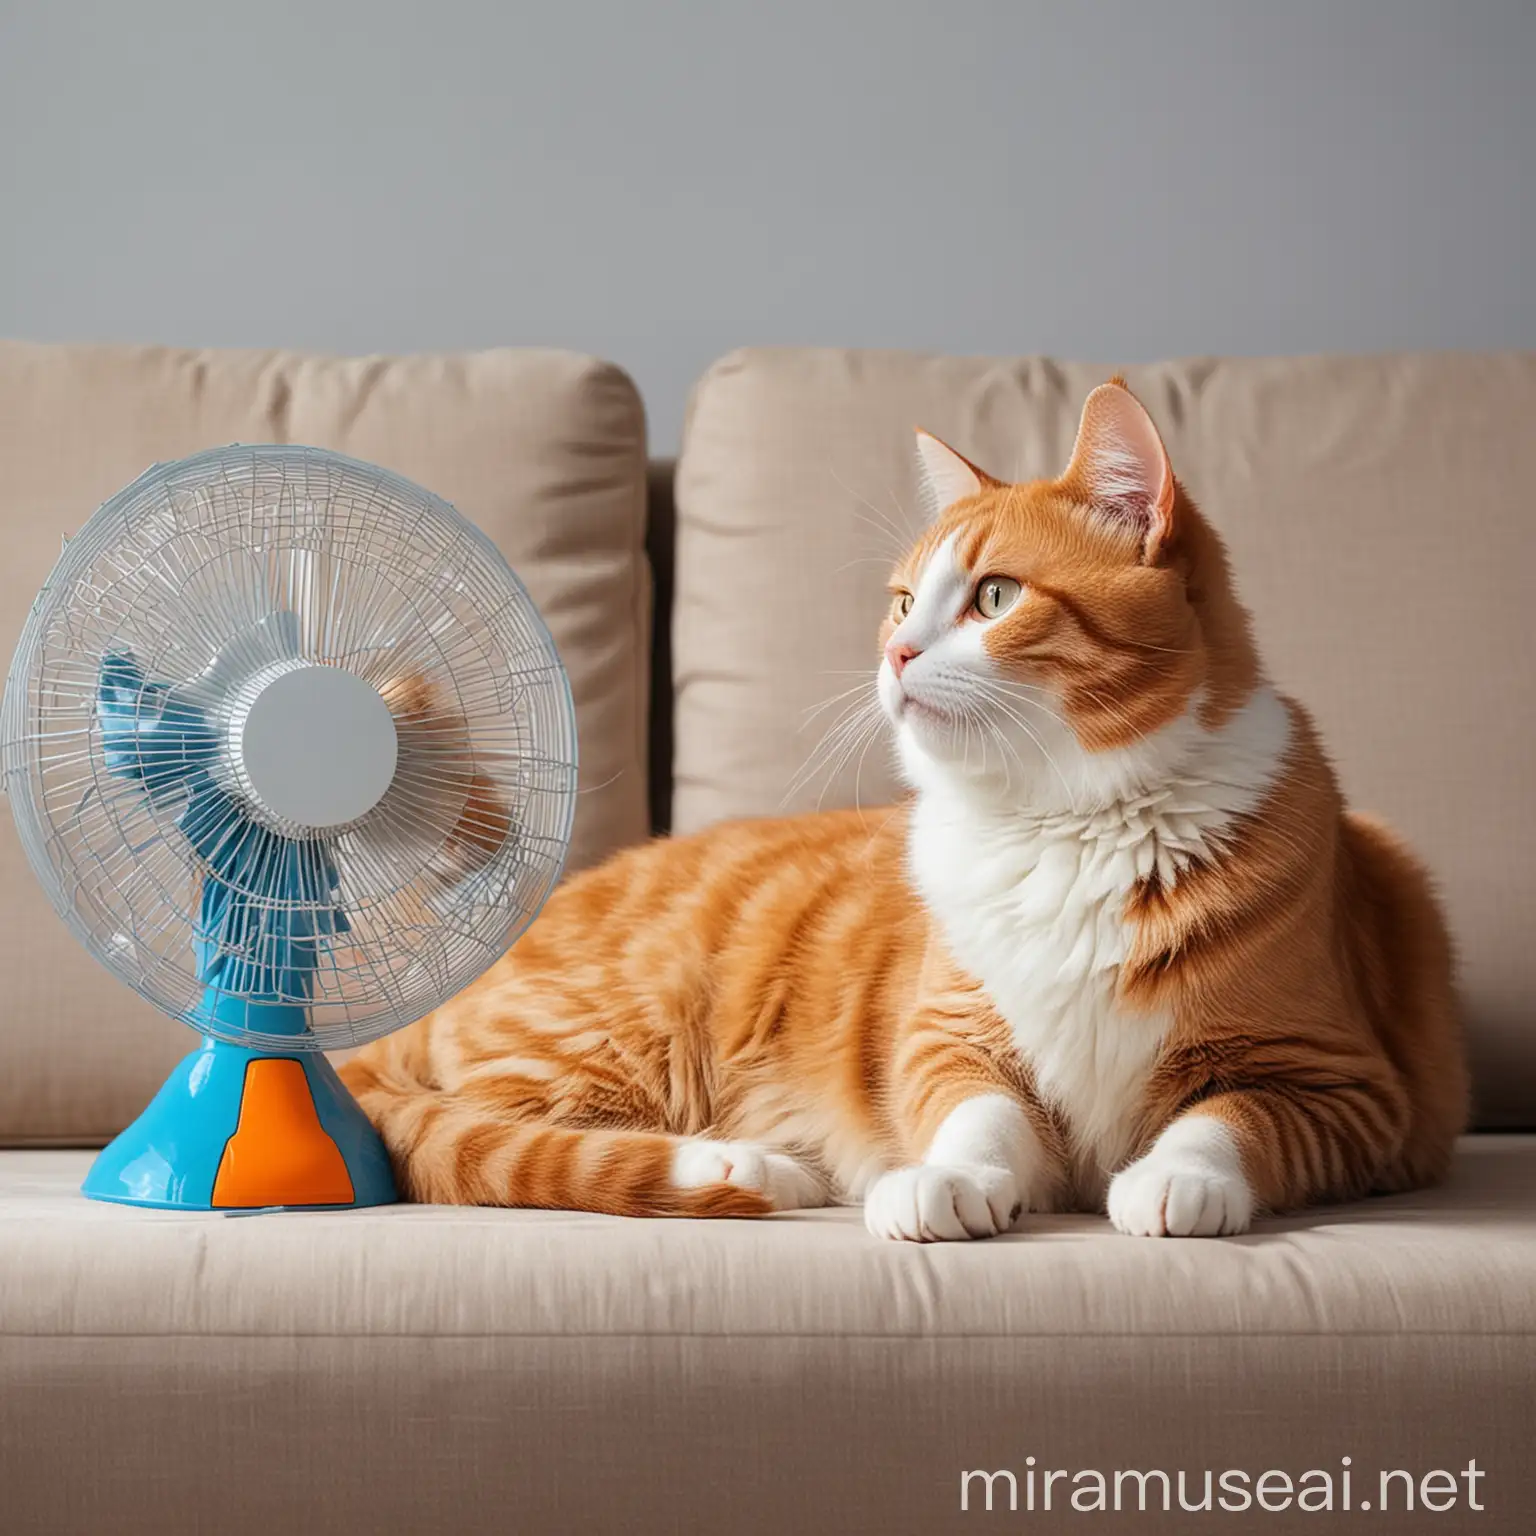 Кошка лежит на диване. Рядом стоит вентилятор. В ярких синих и оранжевых цветах